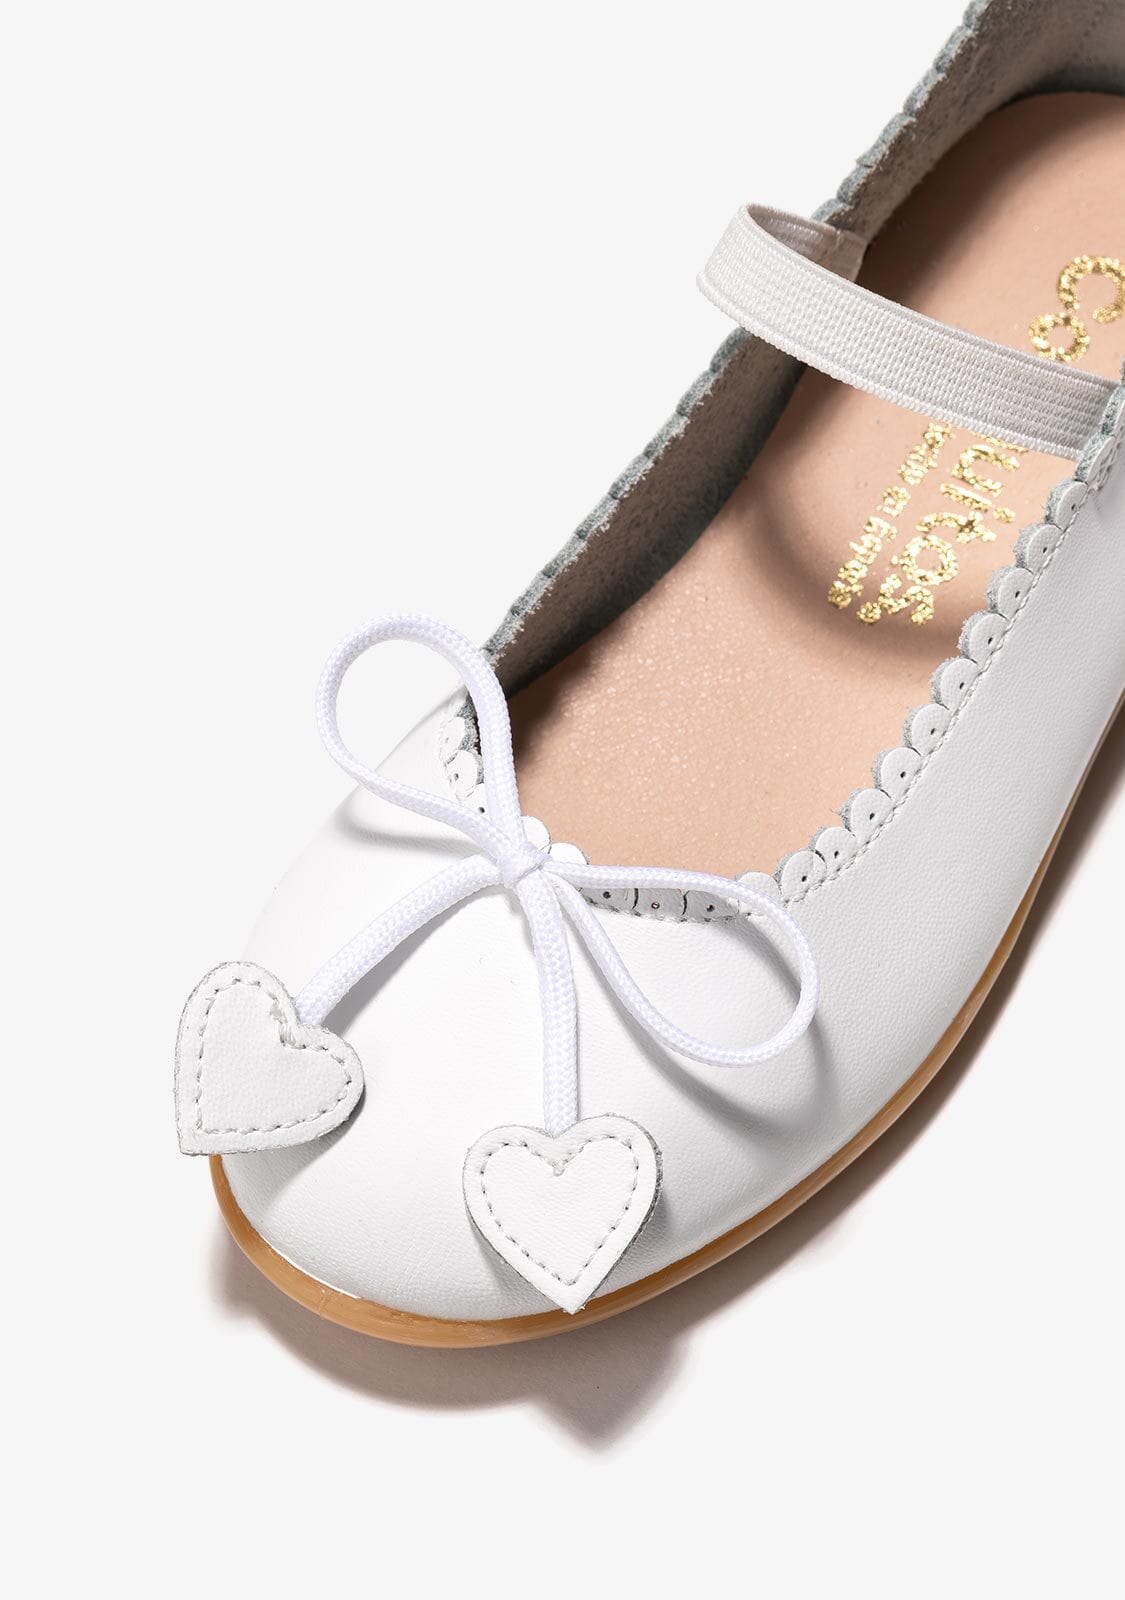 CONGUITOS Shoes Girl's White Bow Hearts Ballerinas